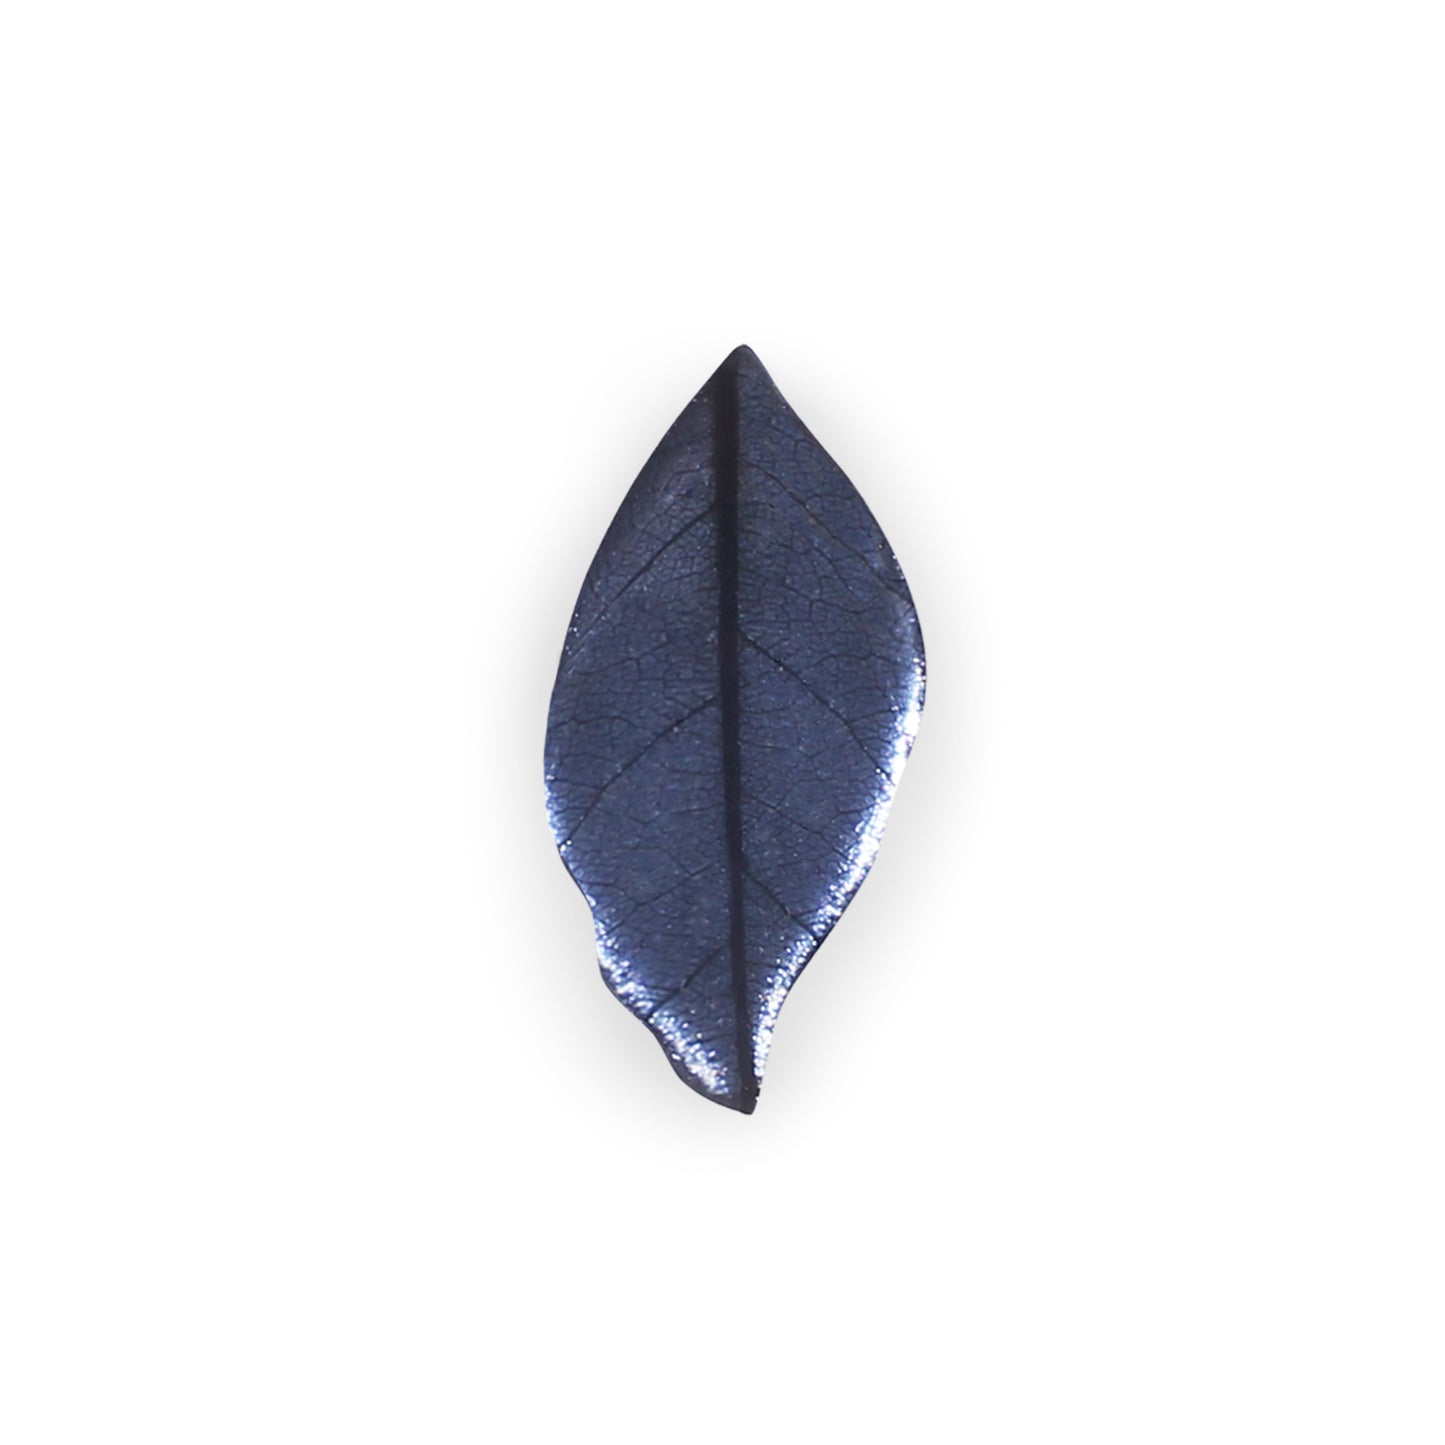 Lupin Skeletal Leaf Shiny Brooch